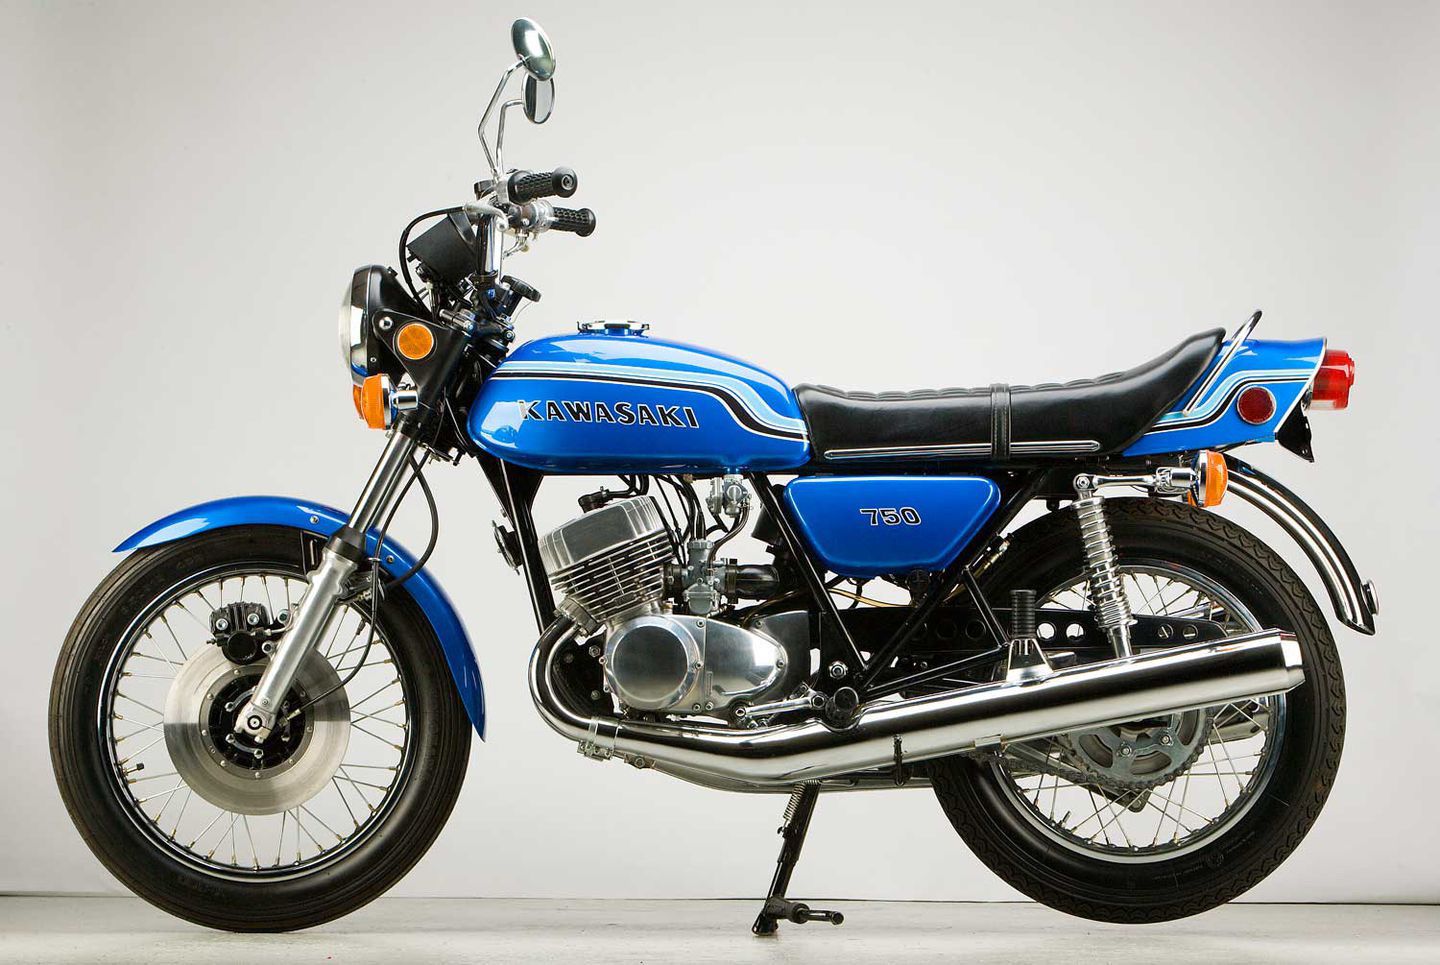 1971 Kawasaki H2 Mach IV motorcycle